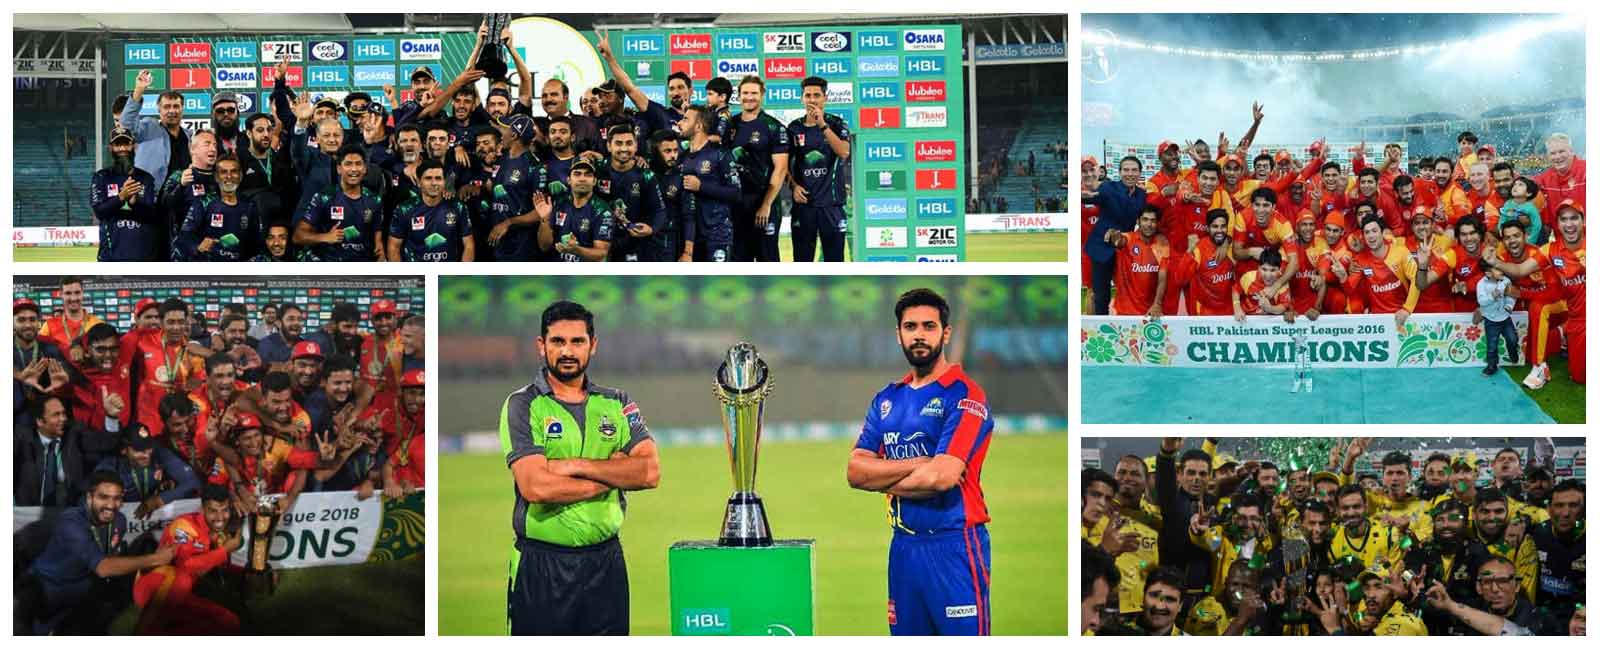 PSL final 2020 Live updates on Lahore Qalandars vs Karachi Kings clash